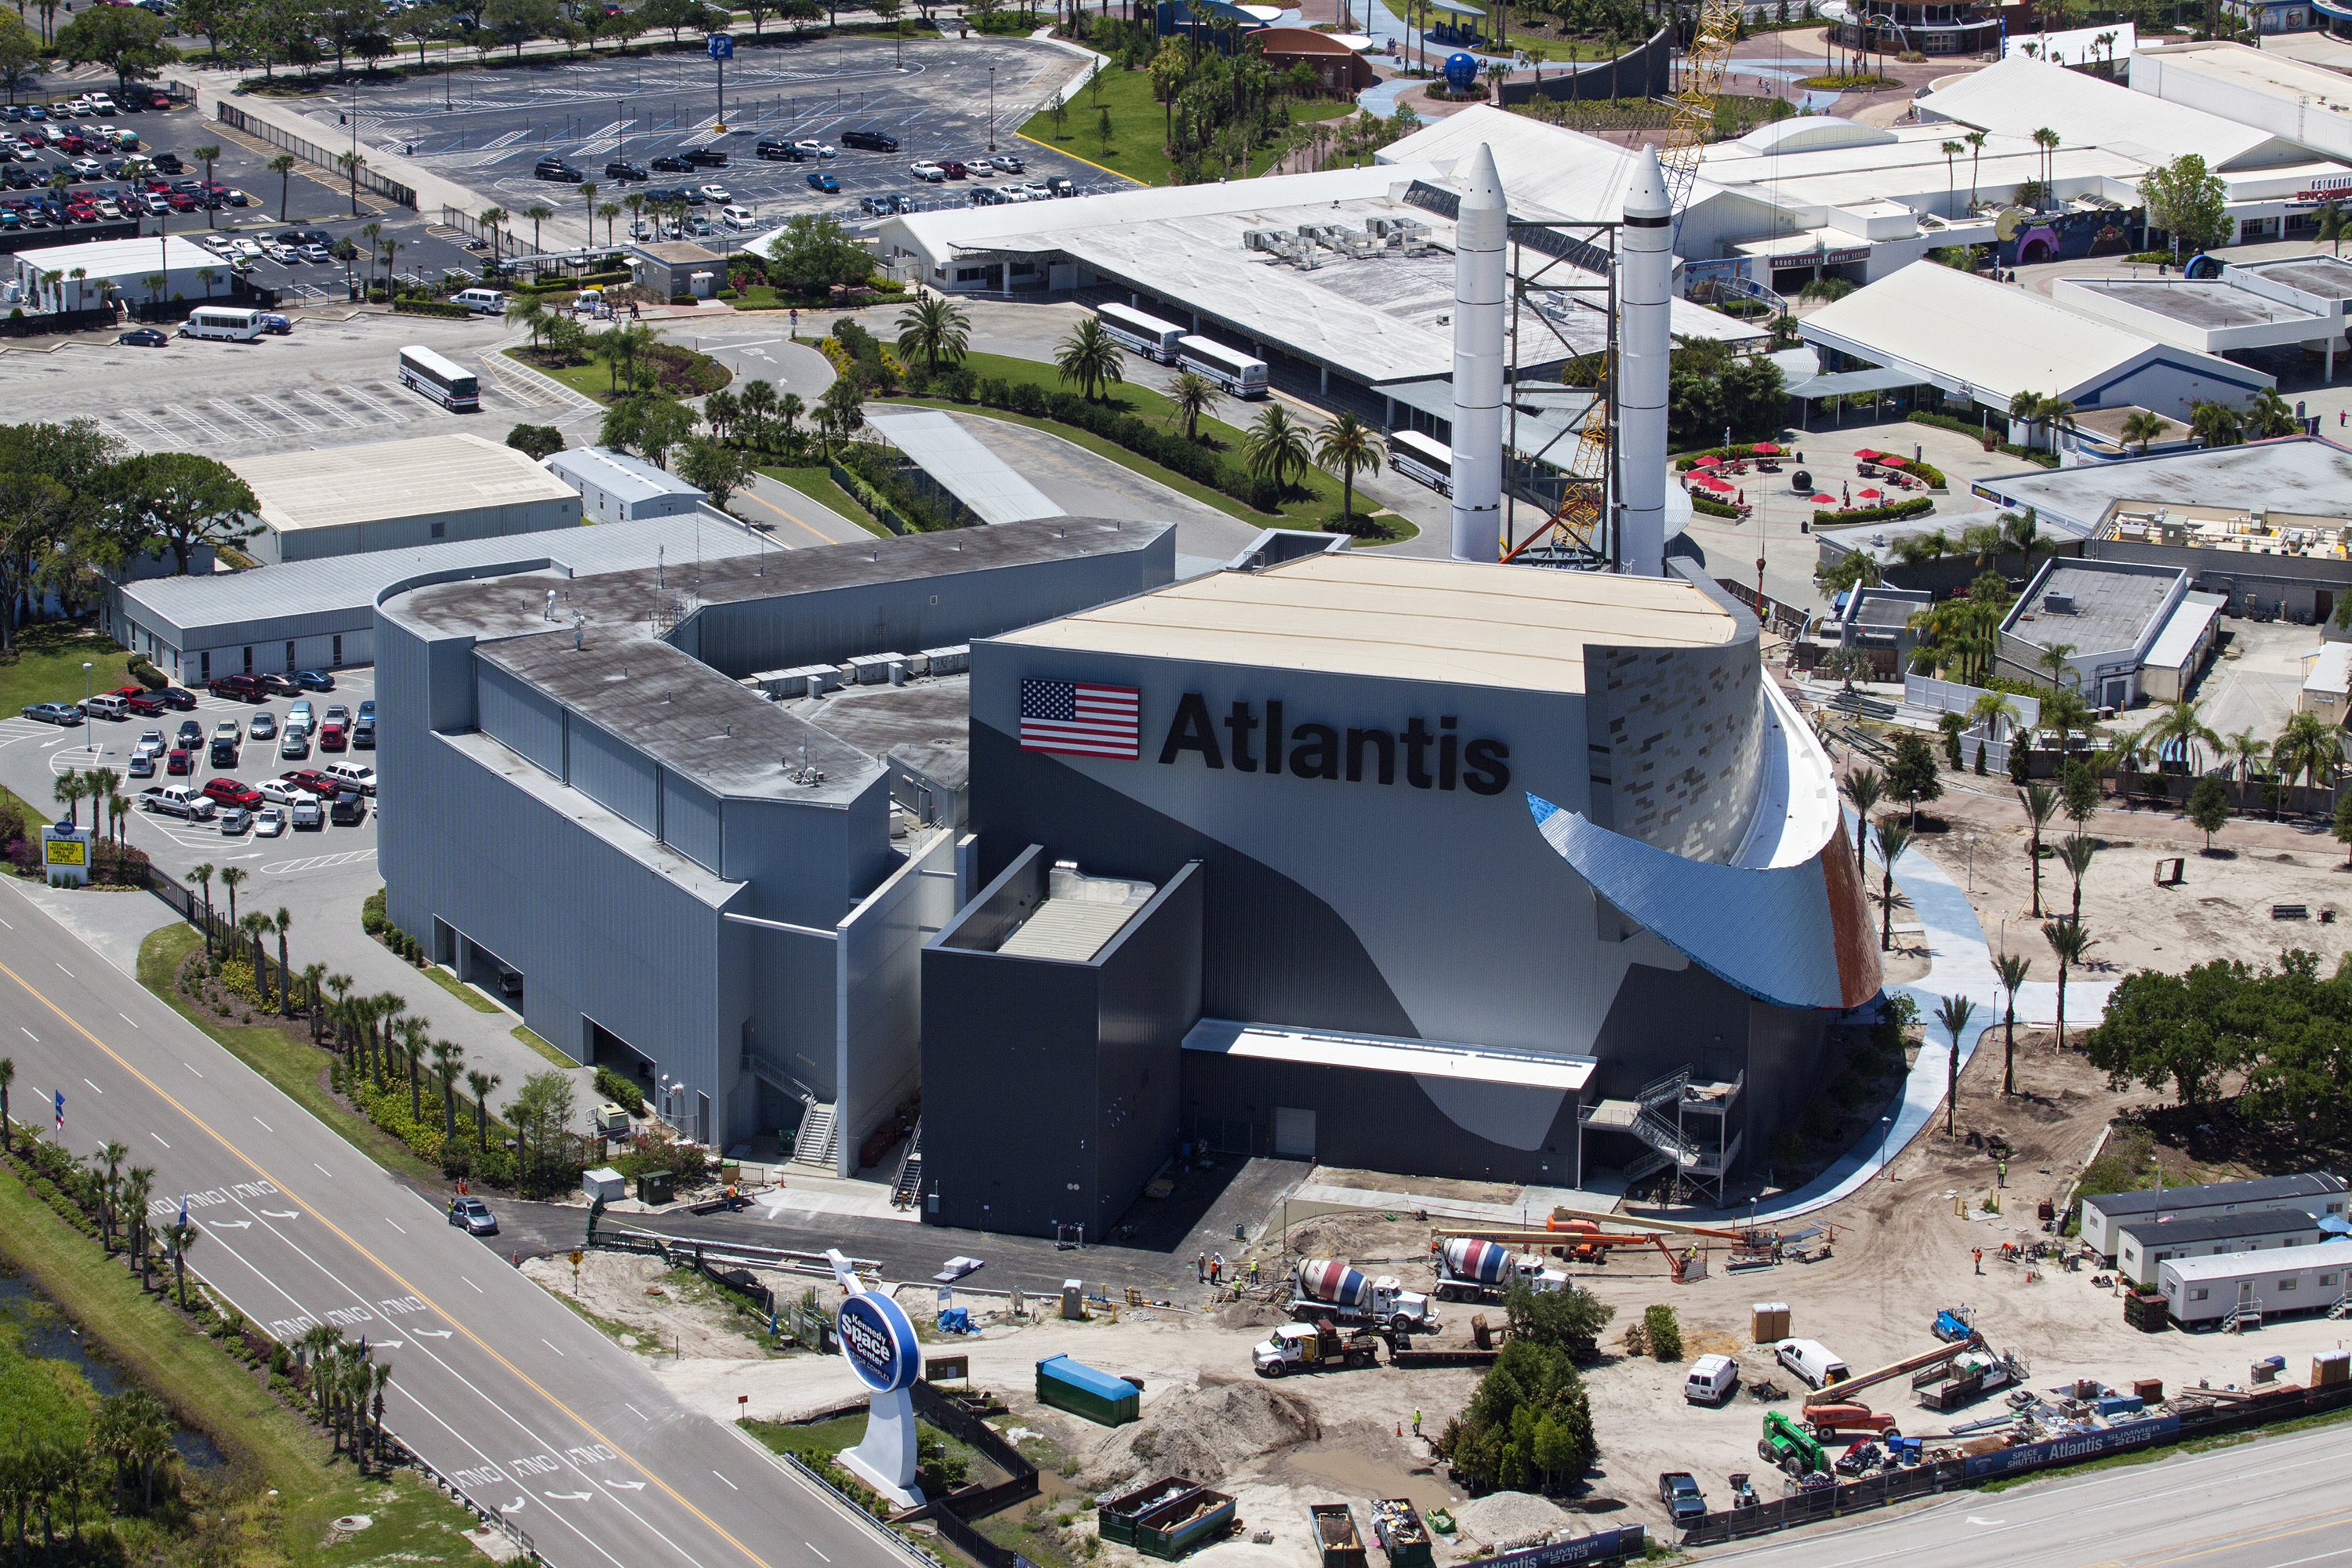 KSC Visitor Complex - Space Shuttle Atlantis exhibit building